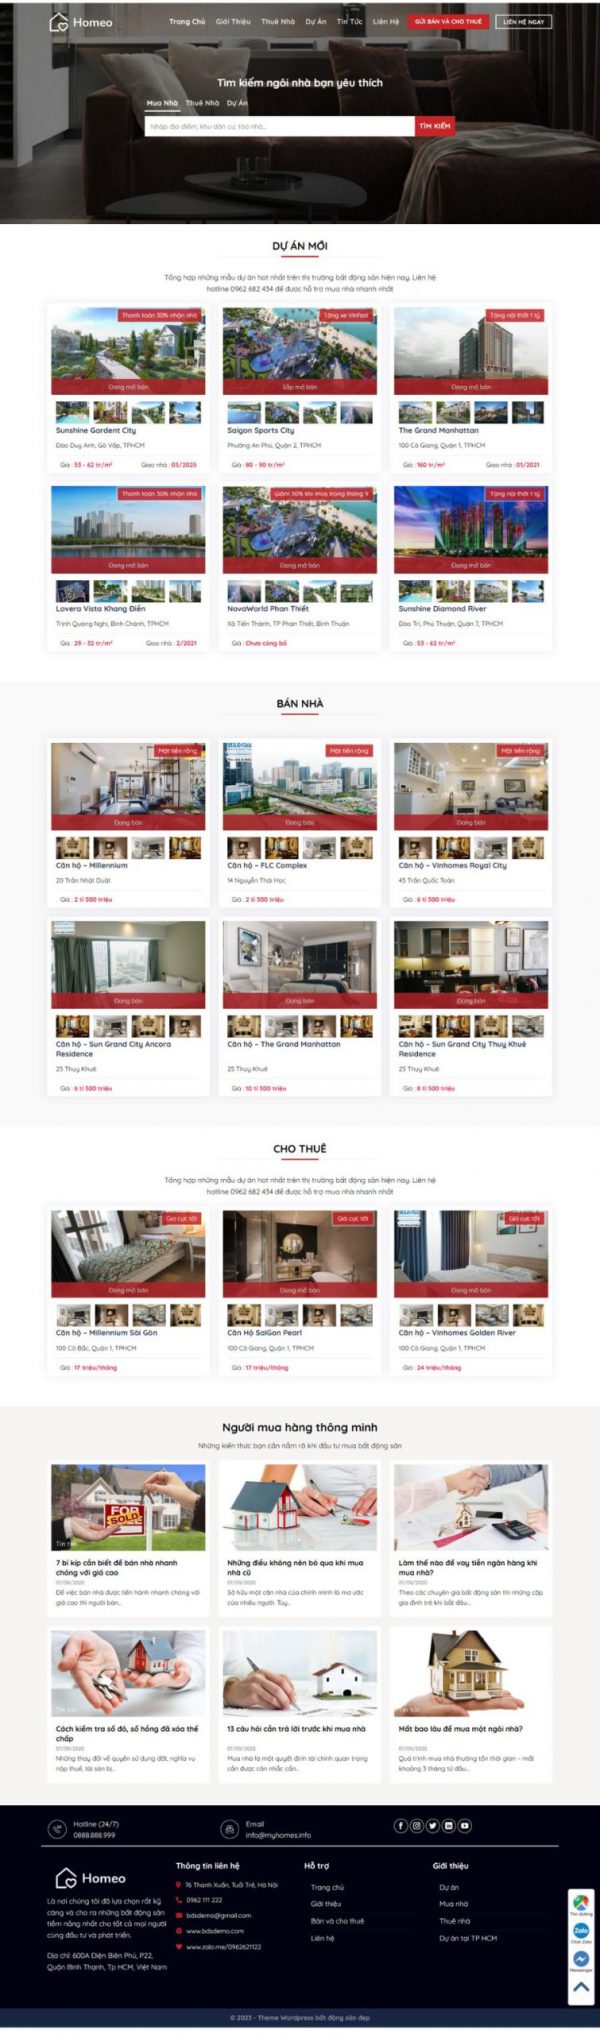 Theme WordPress Website giới thiệu dự án bất động sản